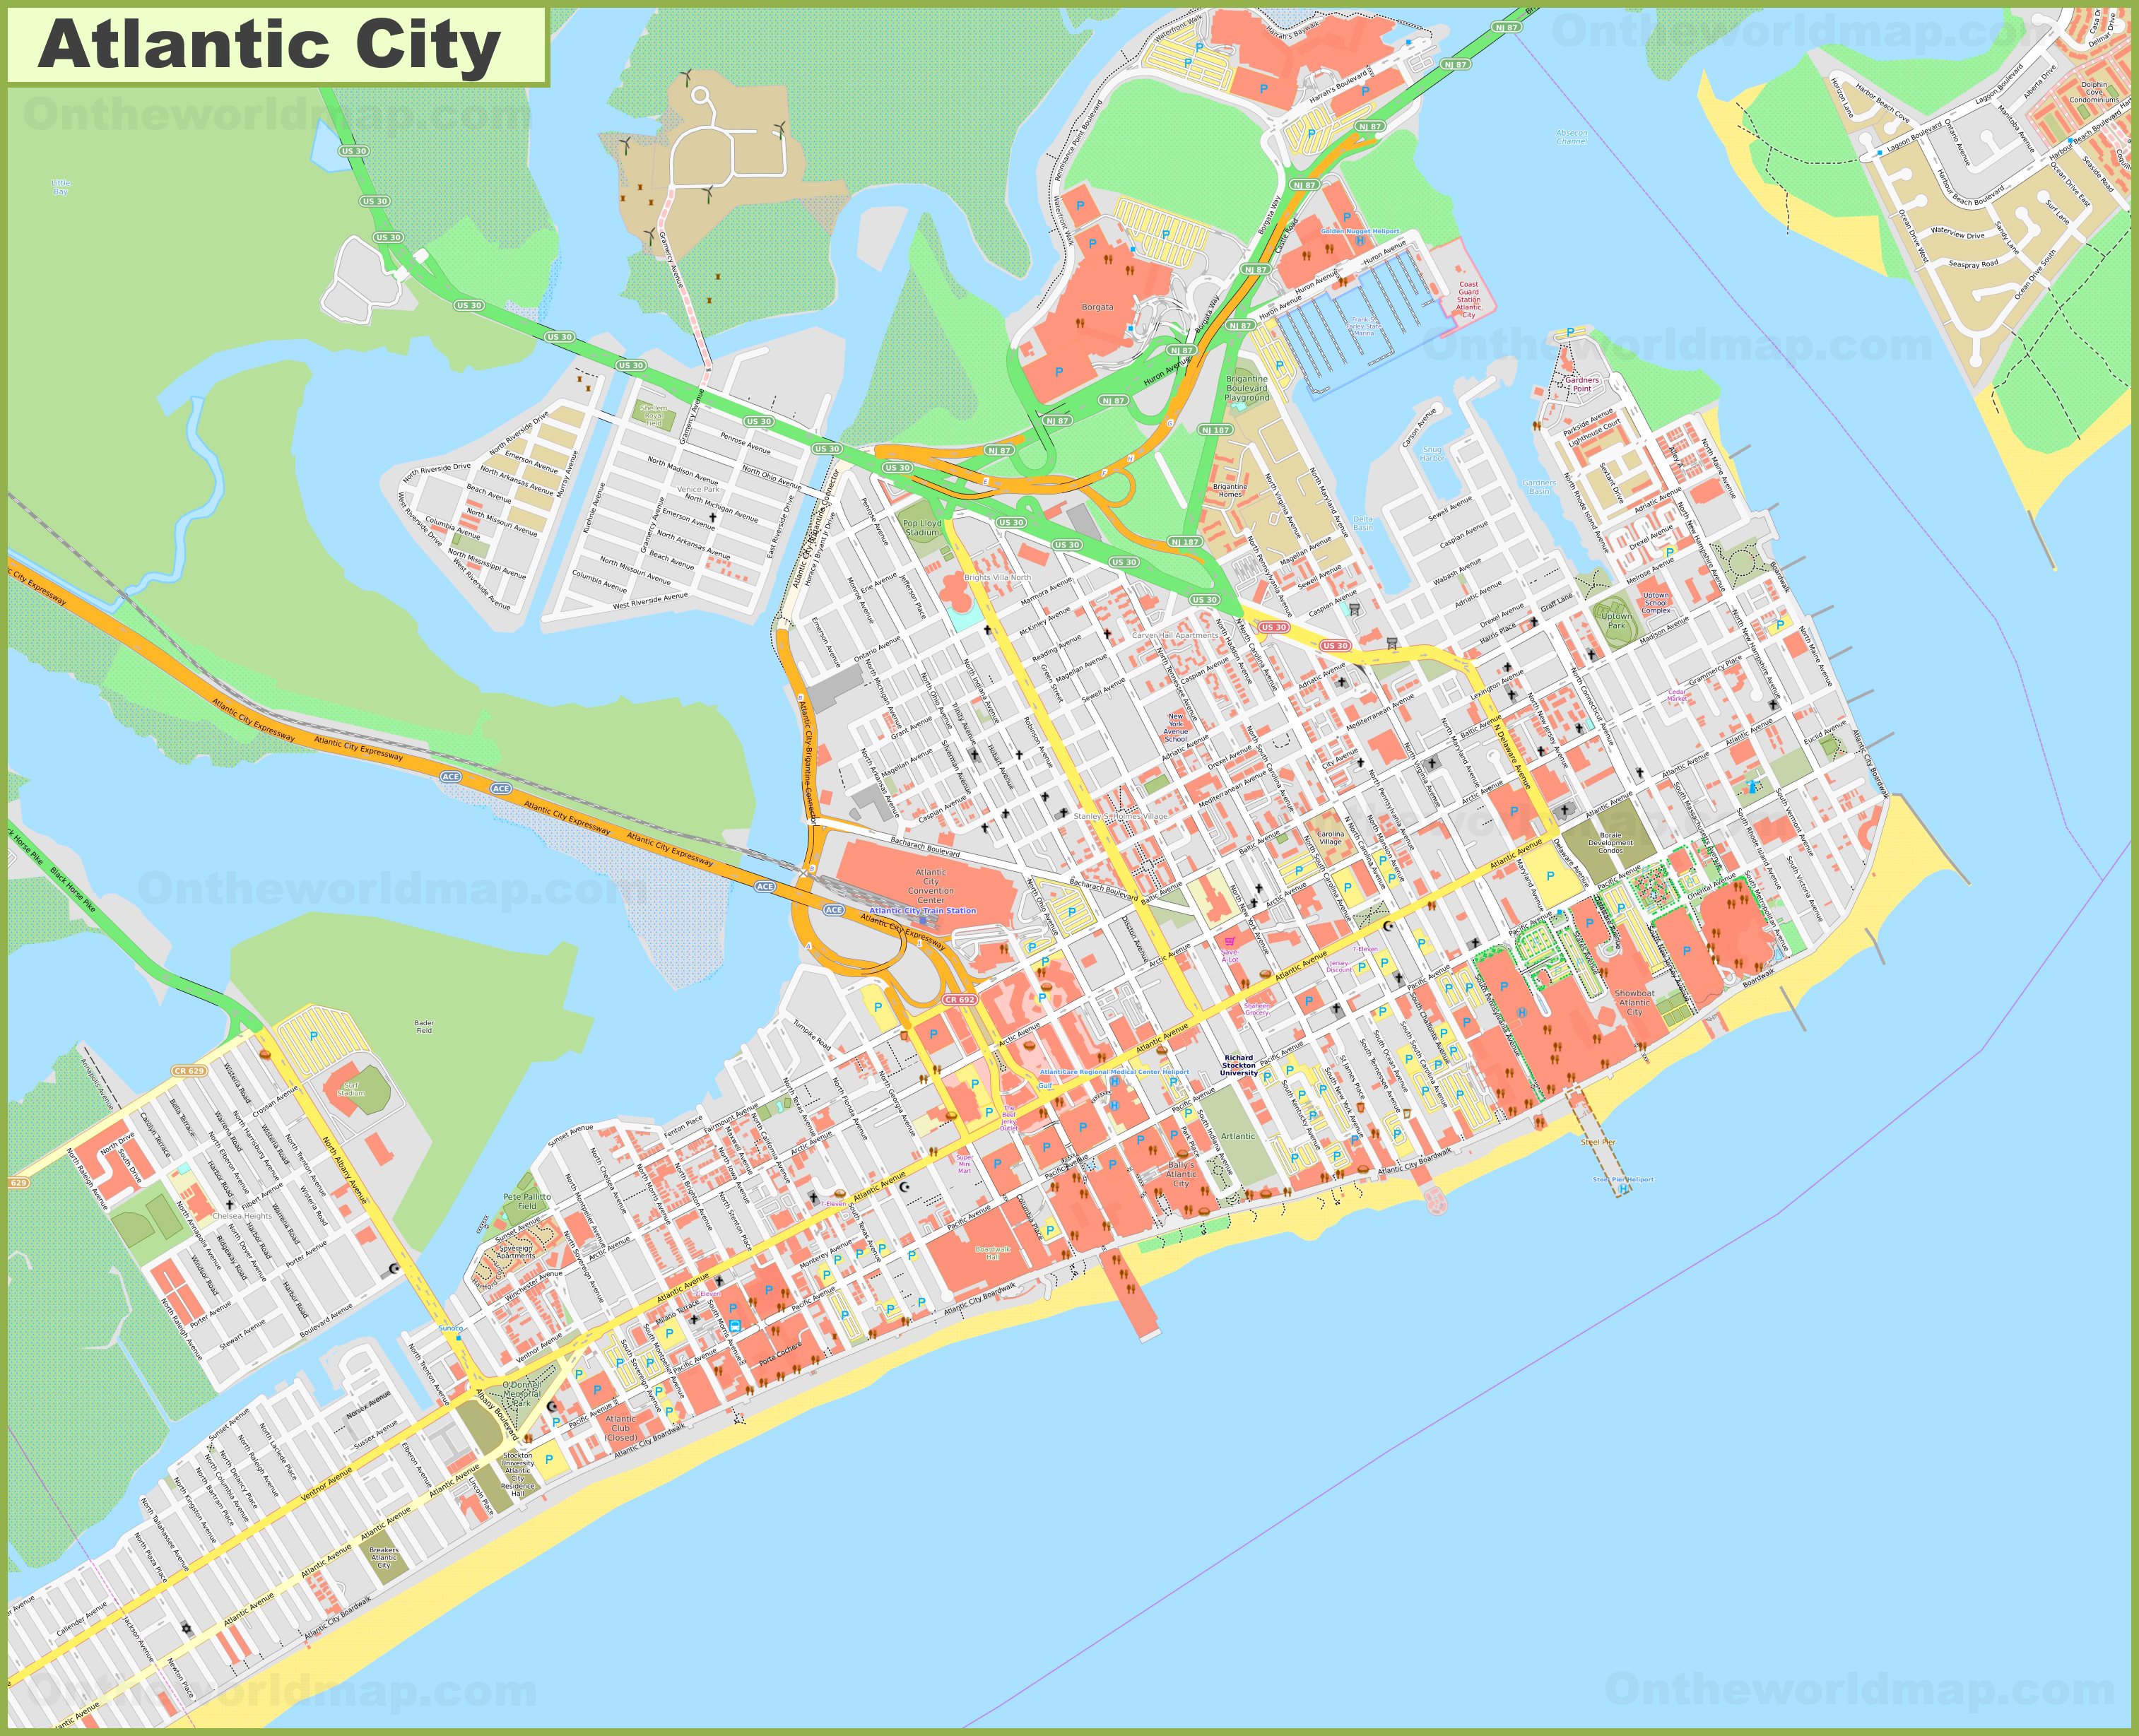 map of casinos on atlantic city boardwalk